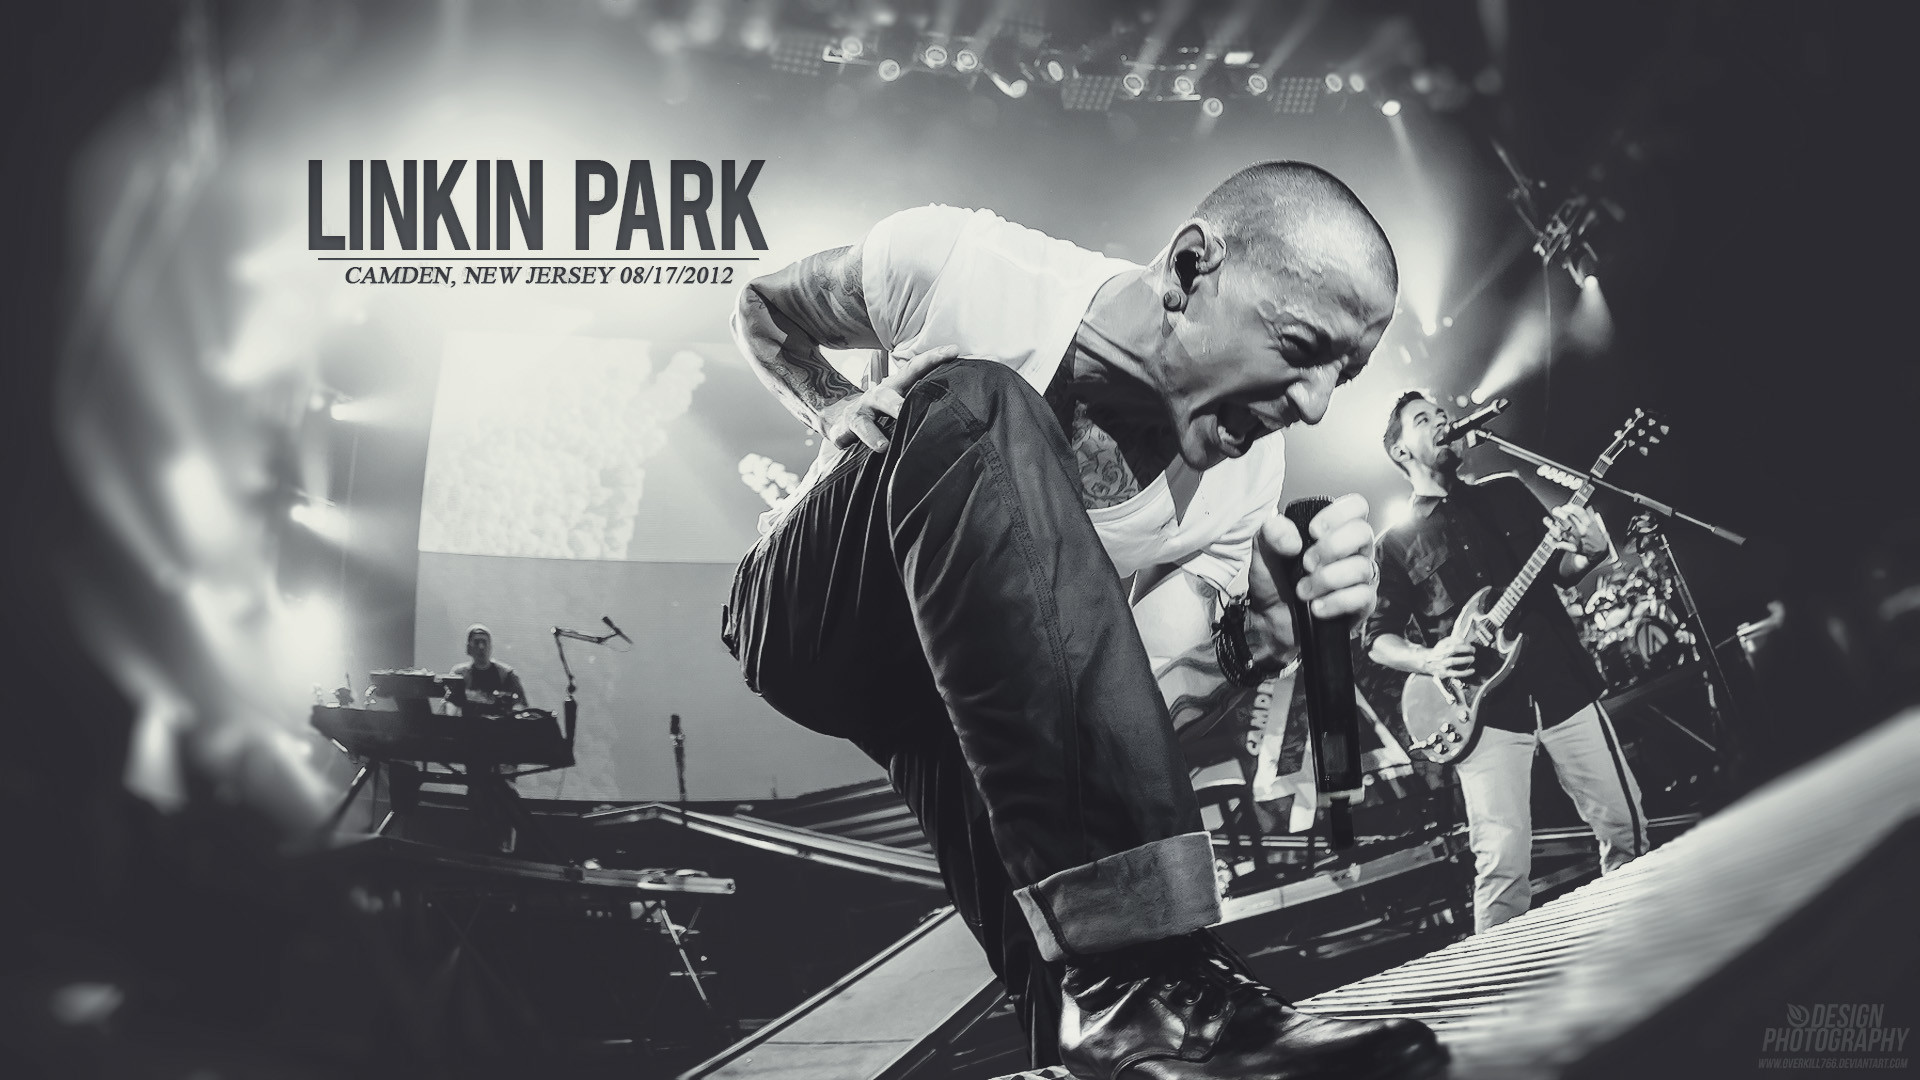 1920x1080 ÐÑÐ»ÑÐ¸Ð¹ Ð´Ð°ÑÐ°Ñ Ð¾Ð»Ð¾Ð½ ÑÐ°Ñ ÑÒ¯ÑÑÐ½ Ð±Ð¸ÑÑÑÐ³ÑÑÑÐ¹ Linkin Park ÑÐ°Ð¼ÑÐ»Ð°Ð³Ð¸Ð¹Ð½ Ð´ÑÑÑÐ¸Ð½ Ð´Ó©Ð½Ð³Ó©Ð¶  41 Ð½Ð°ÑÑÐ°Ð¹ Ð±Ð°Ð¹ÑÐ°Ð½ ÑÐ¼.